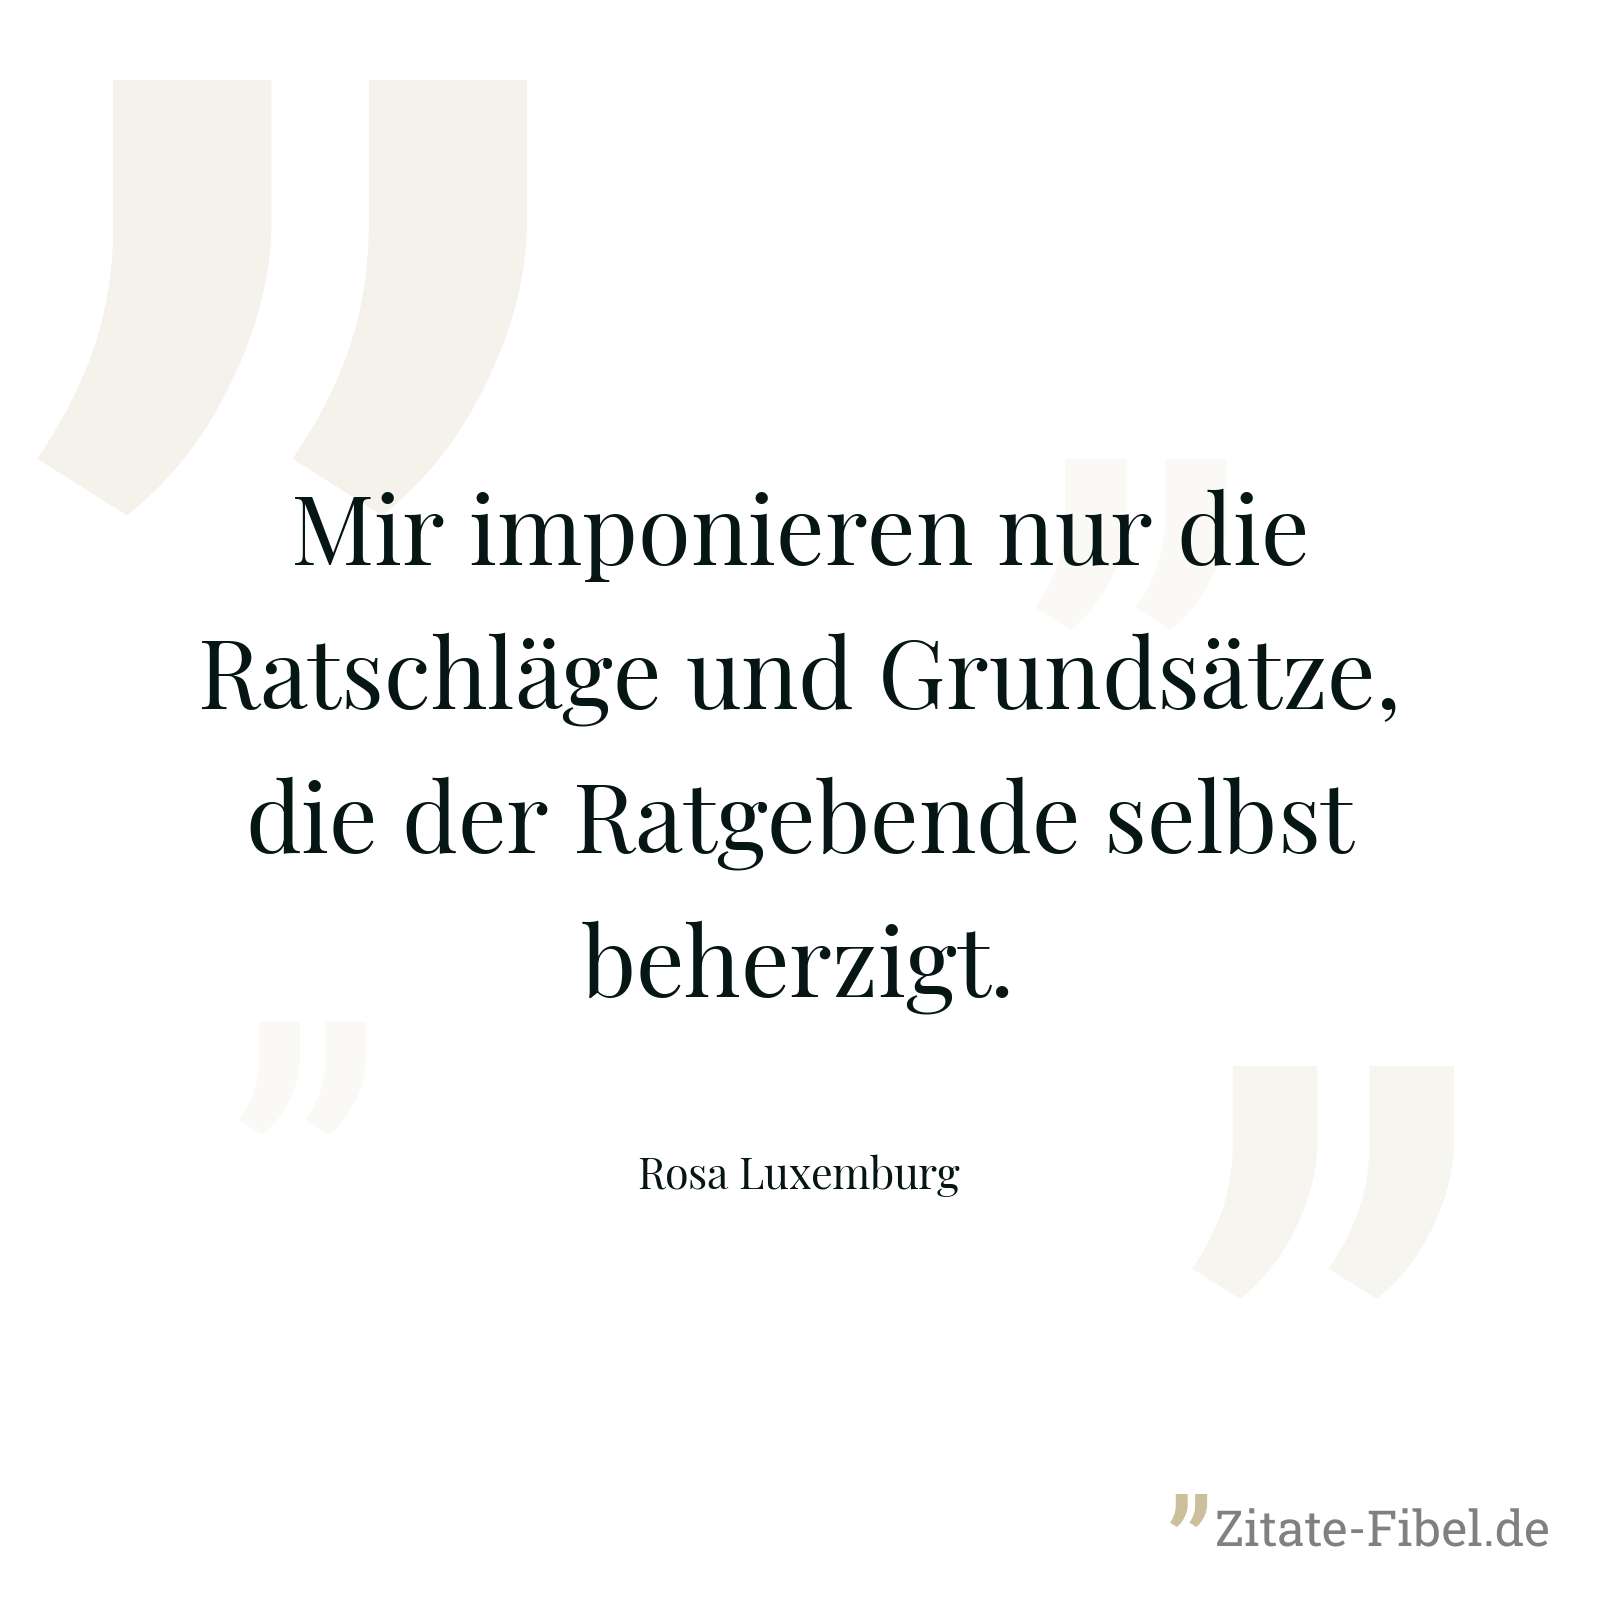 Mir imponieren nur die Ratschläge und Grundsätze, die der Ratgebende selbst beherzigt. - Rosa Luxemburg